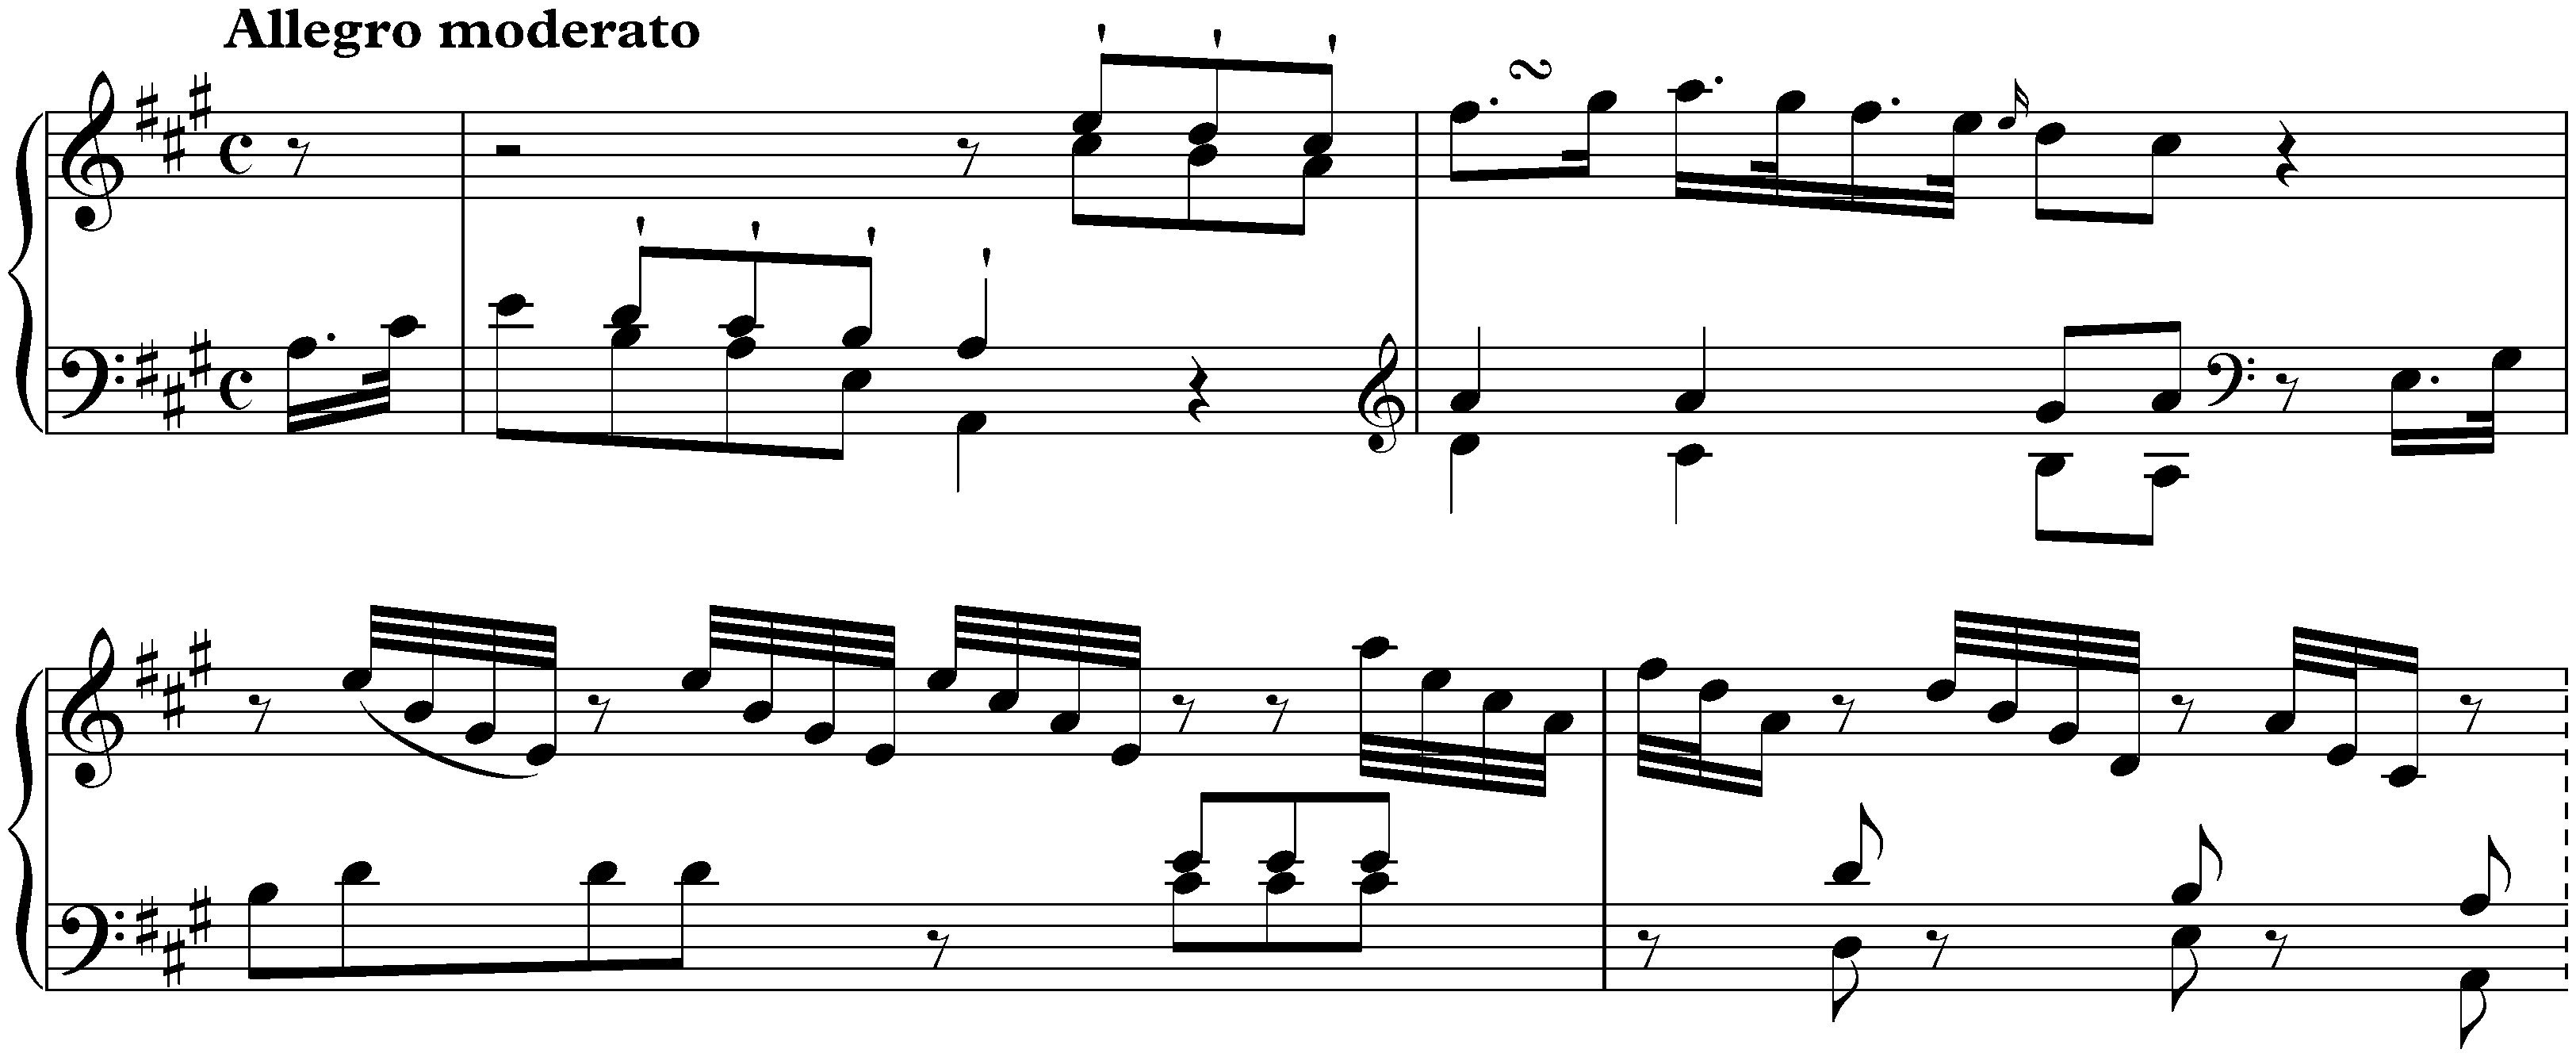 Sonata in A major, Hob. XVI:26; 1. Allegro moderato